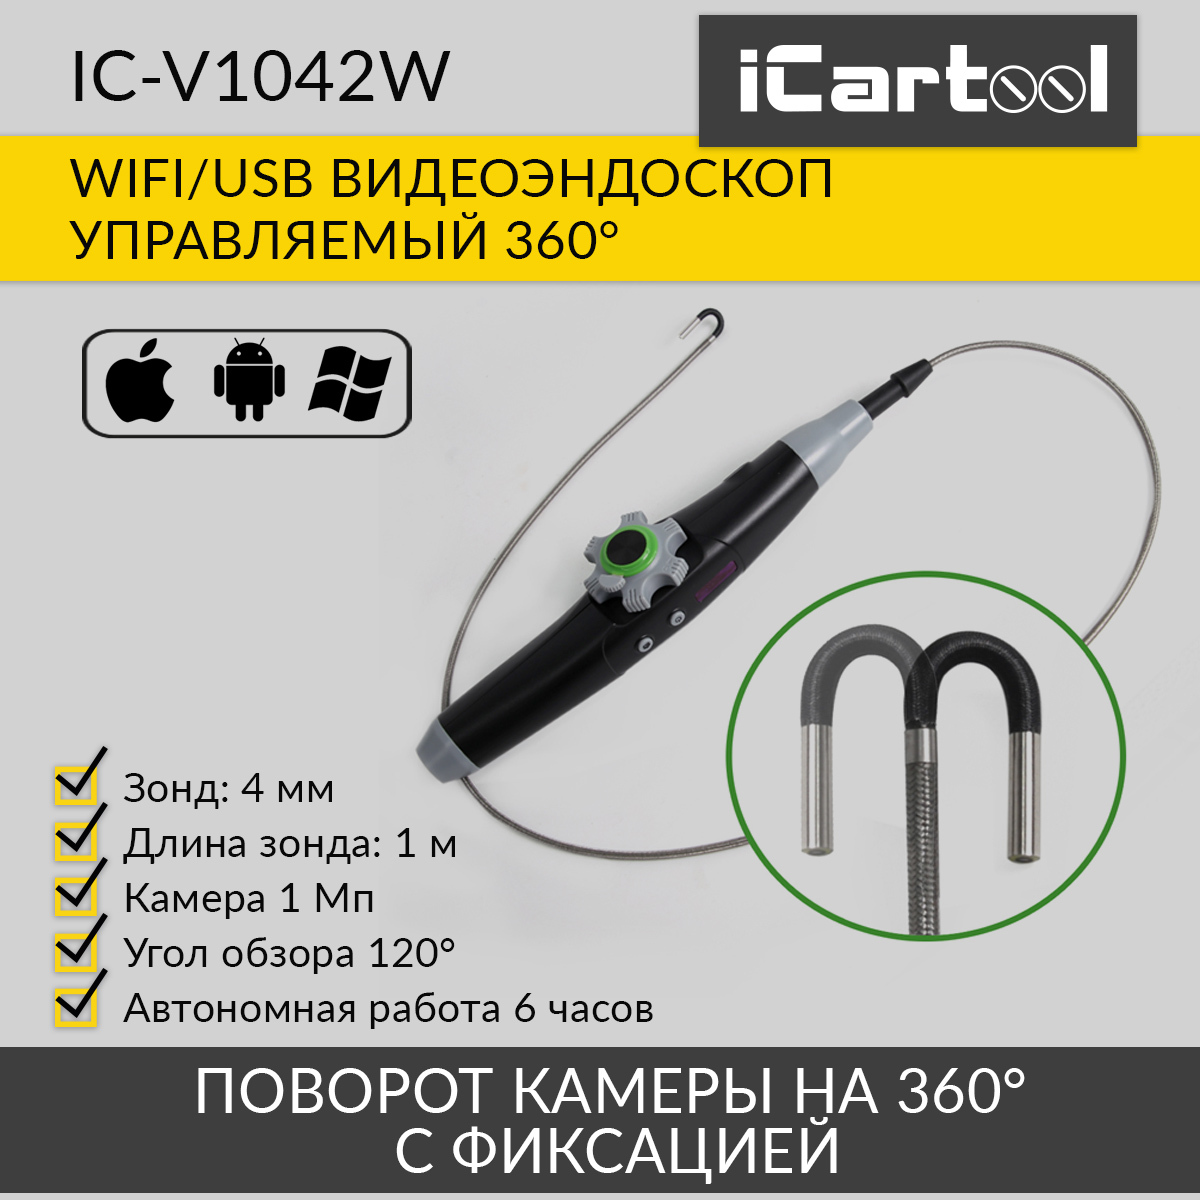 Видеоэндоскоп управляемый iCartool IC-V1042W WIFI/USB, 1Мп, 1168х720, 1м, 4мм зонд, 360° набор для рисования в темноте планшет а4 человек паук